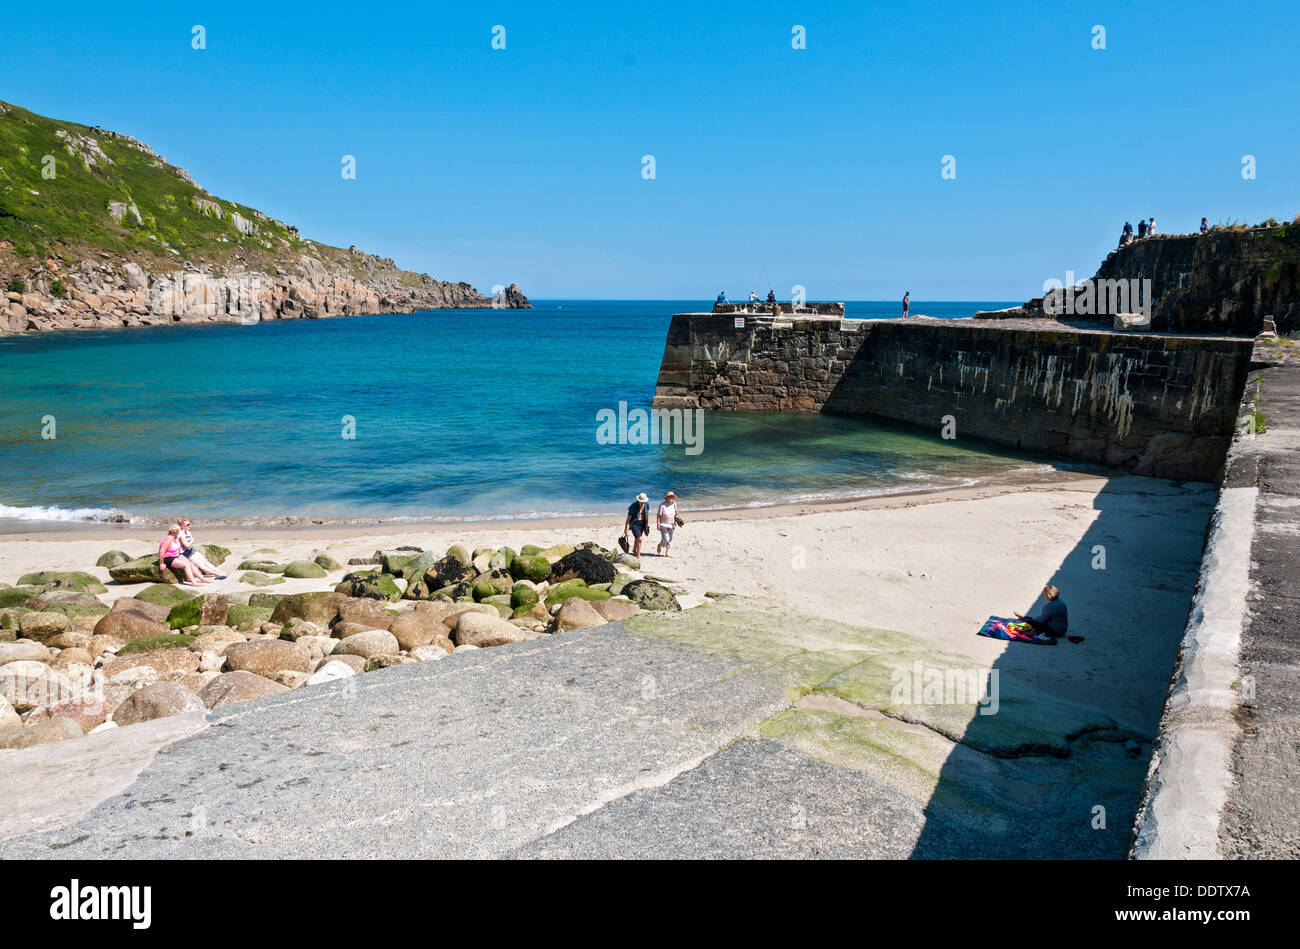 Gran Bretaña, Inglaterra, Cornwall, Lamorna Cove, playa, muelle de pescadores Foto de stock